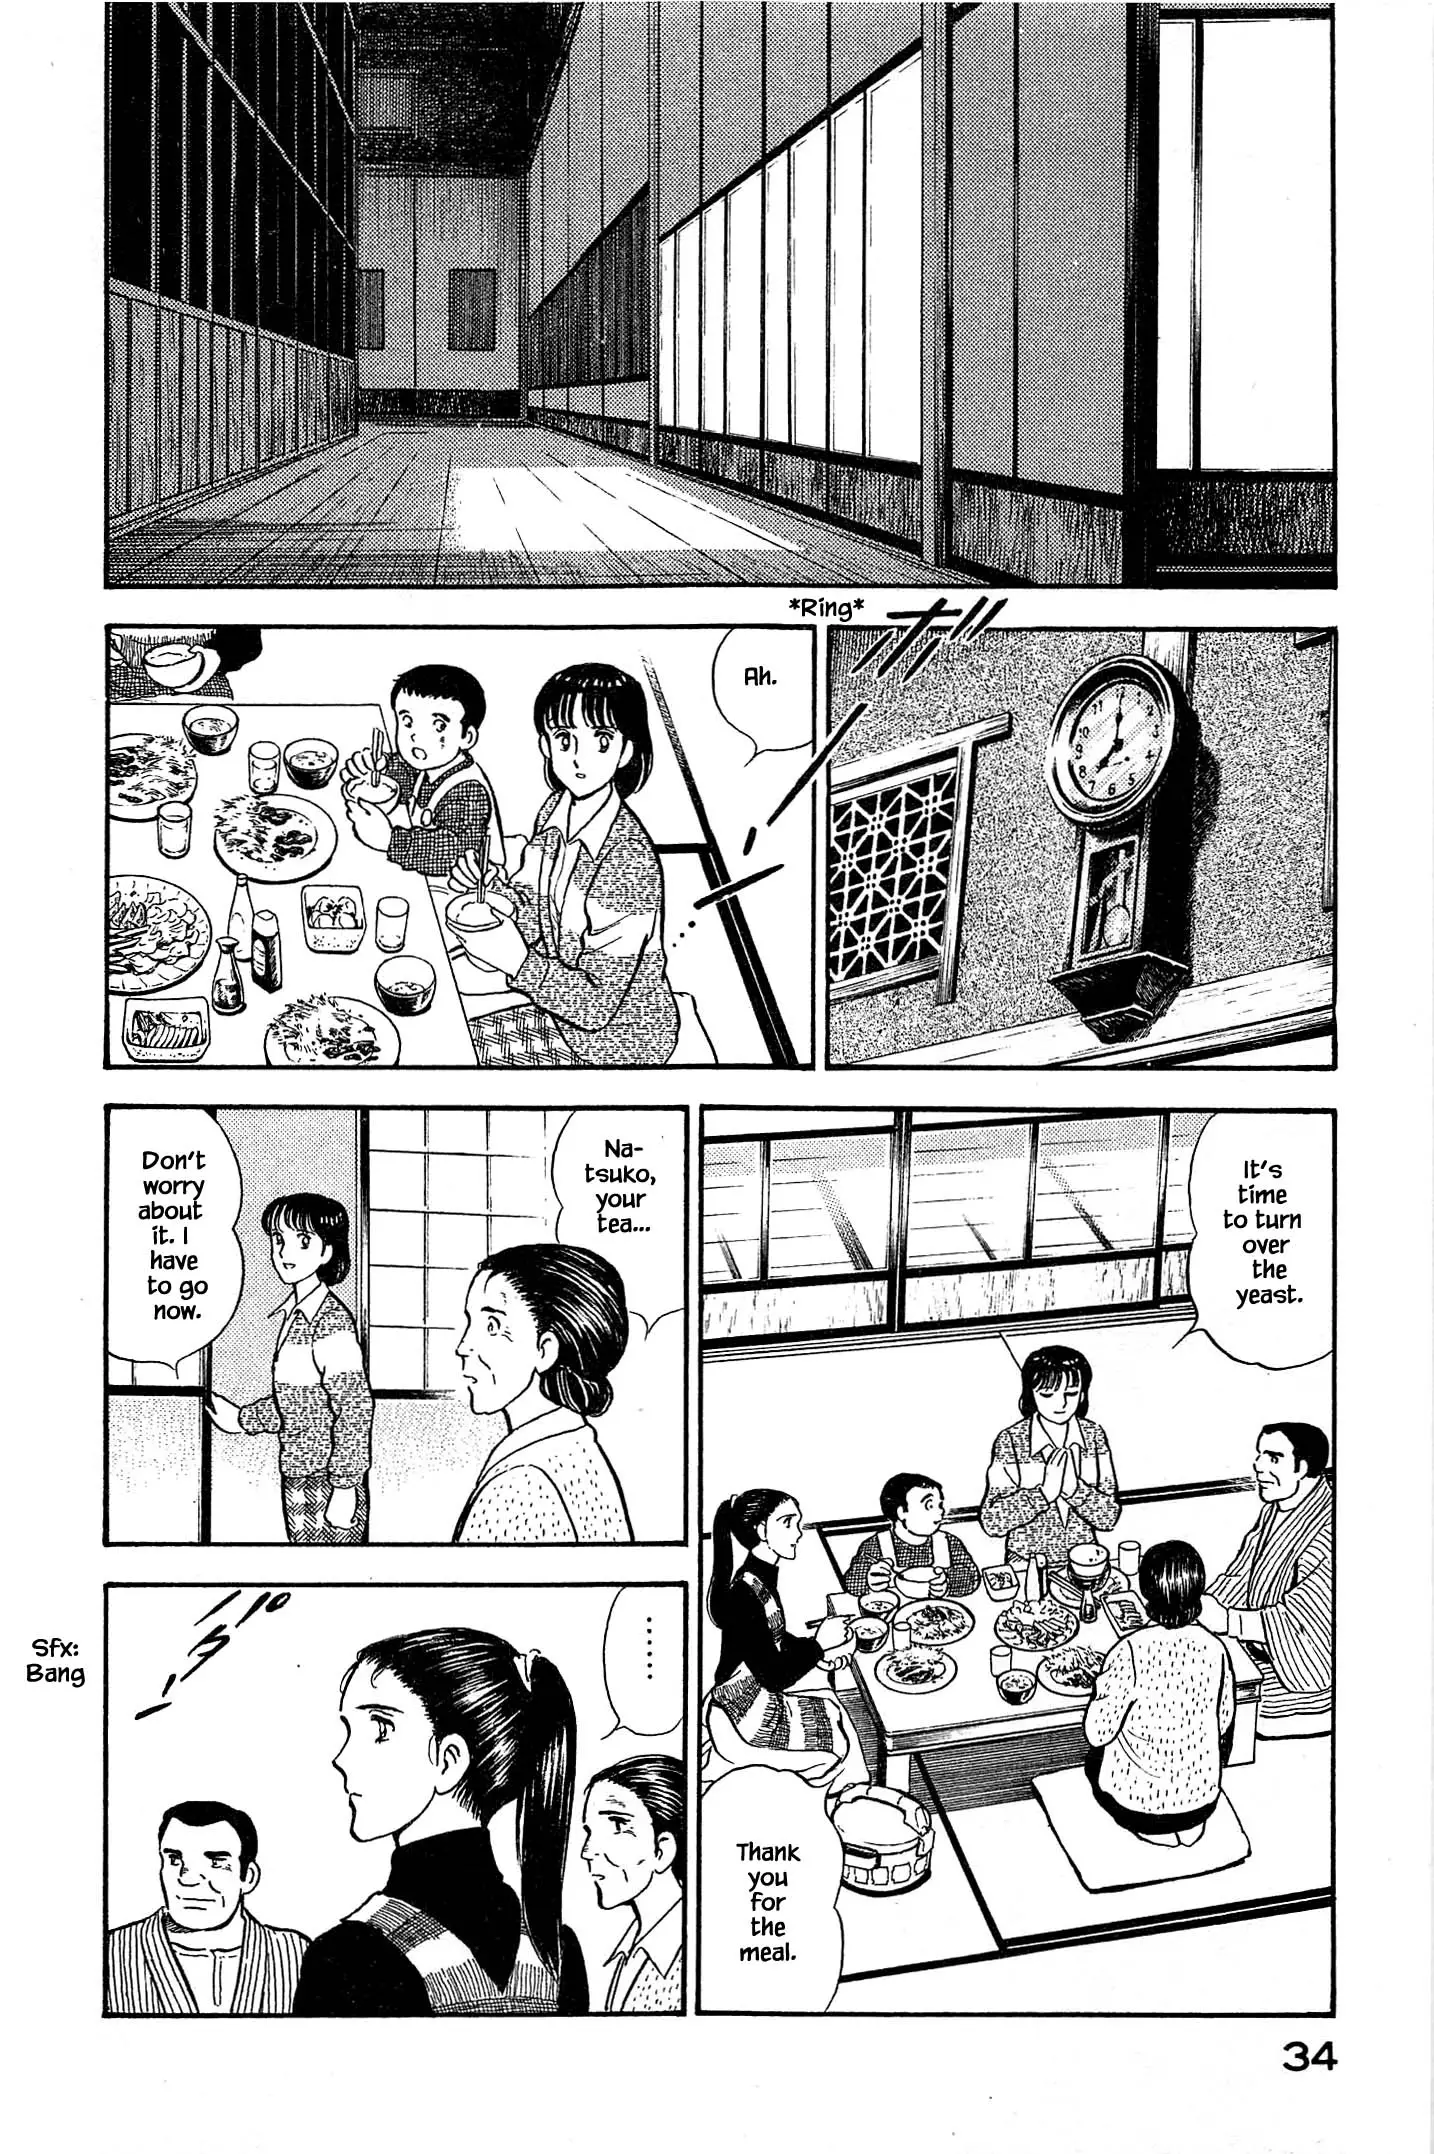 Natsuko's Sake - 111 page 12-cde499dd